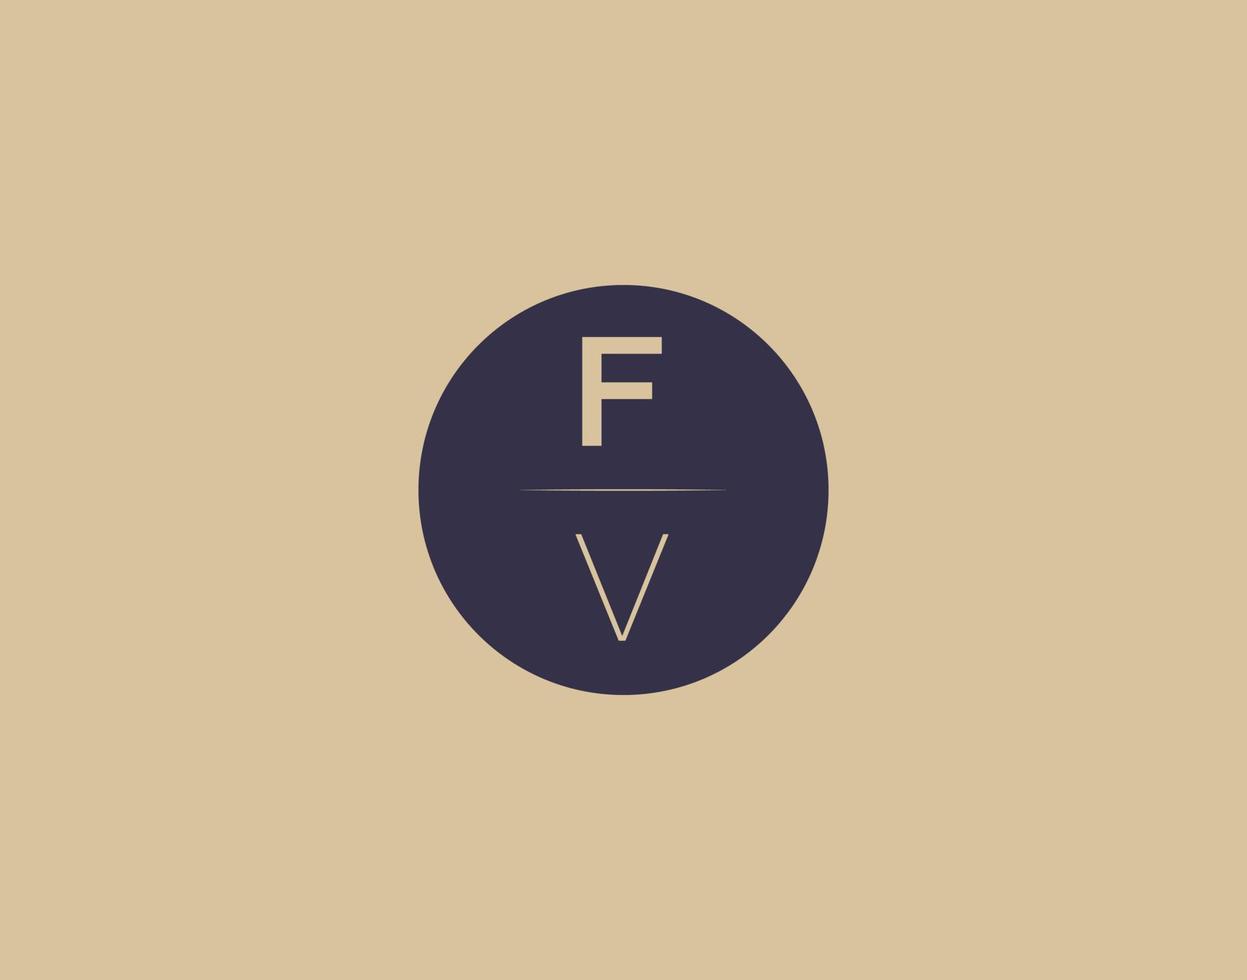 FV letter modern elegant logo design vector images